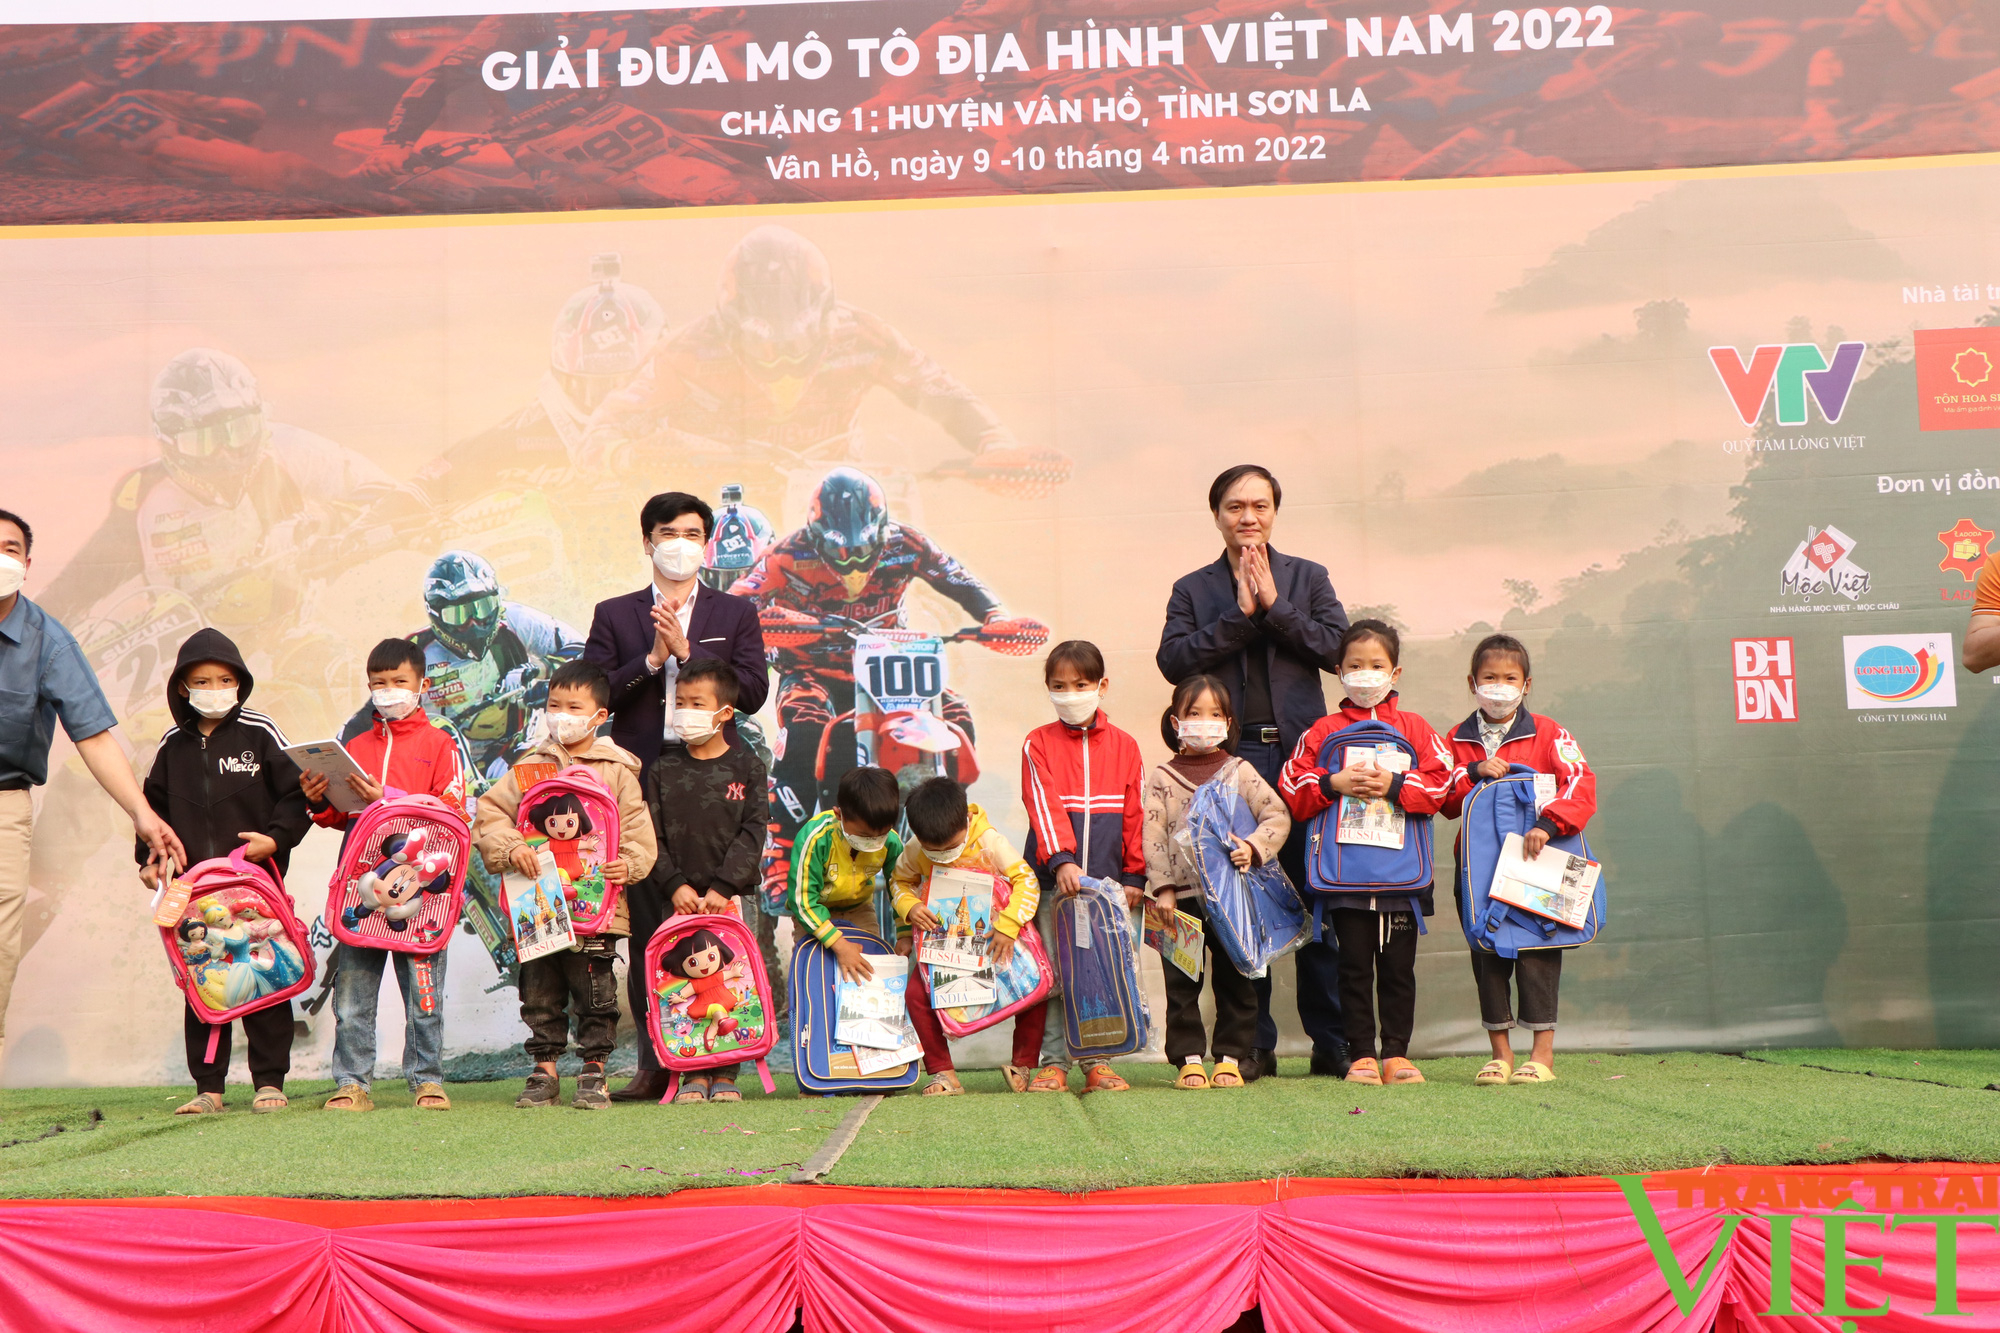 Sôi nổi giải đua mô tô địa hình Việt Nam năm 2022 ở Sơn La - Ảnh 3.